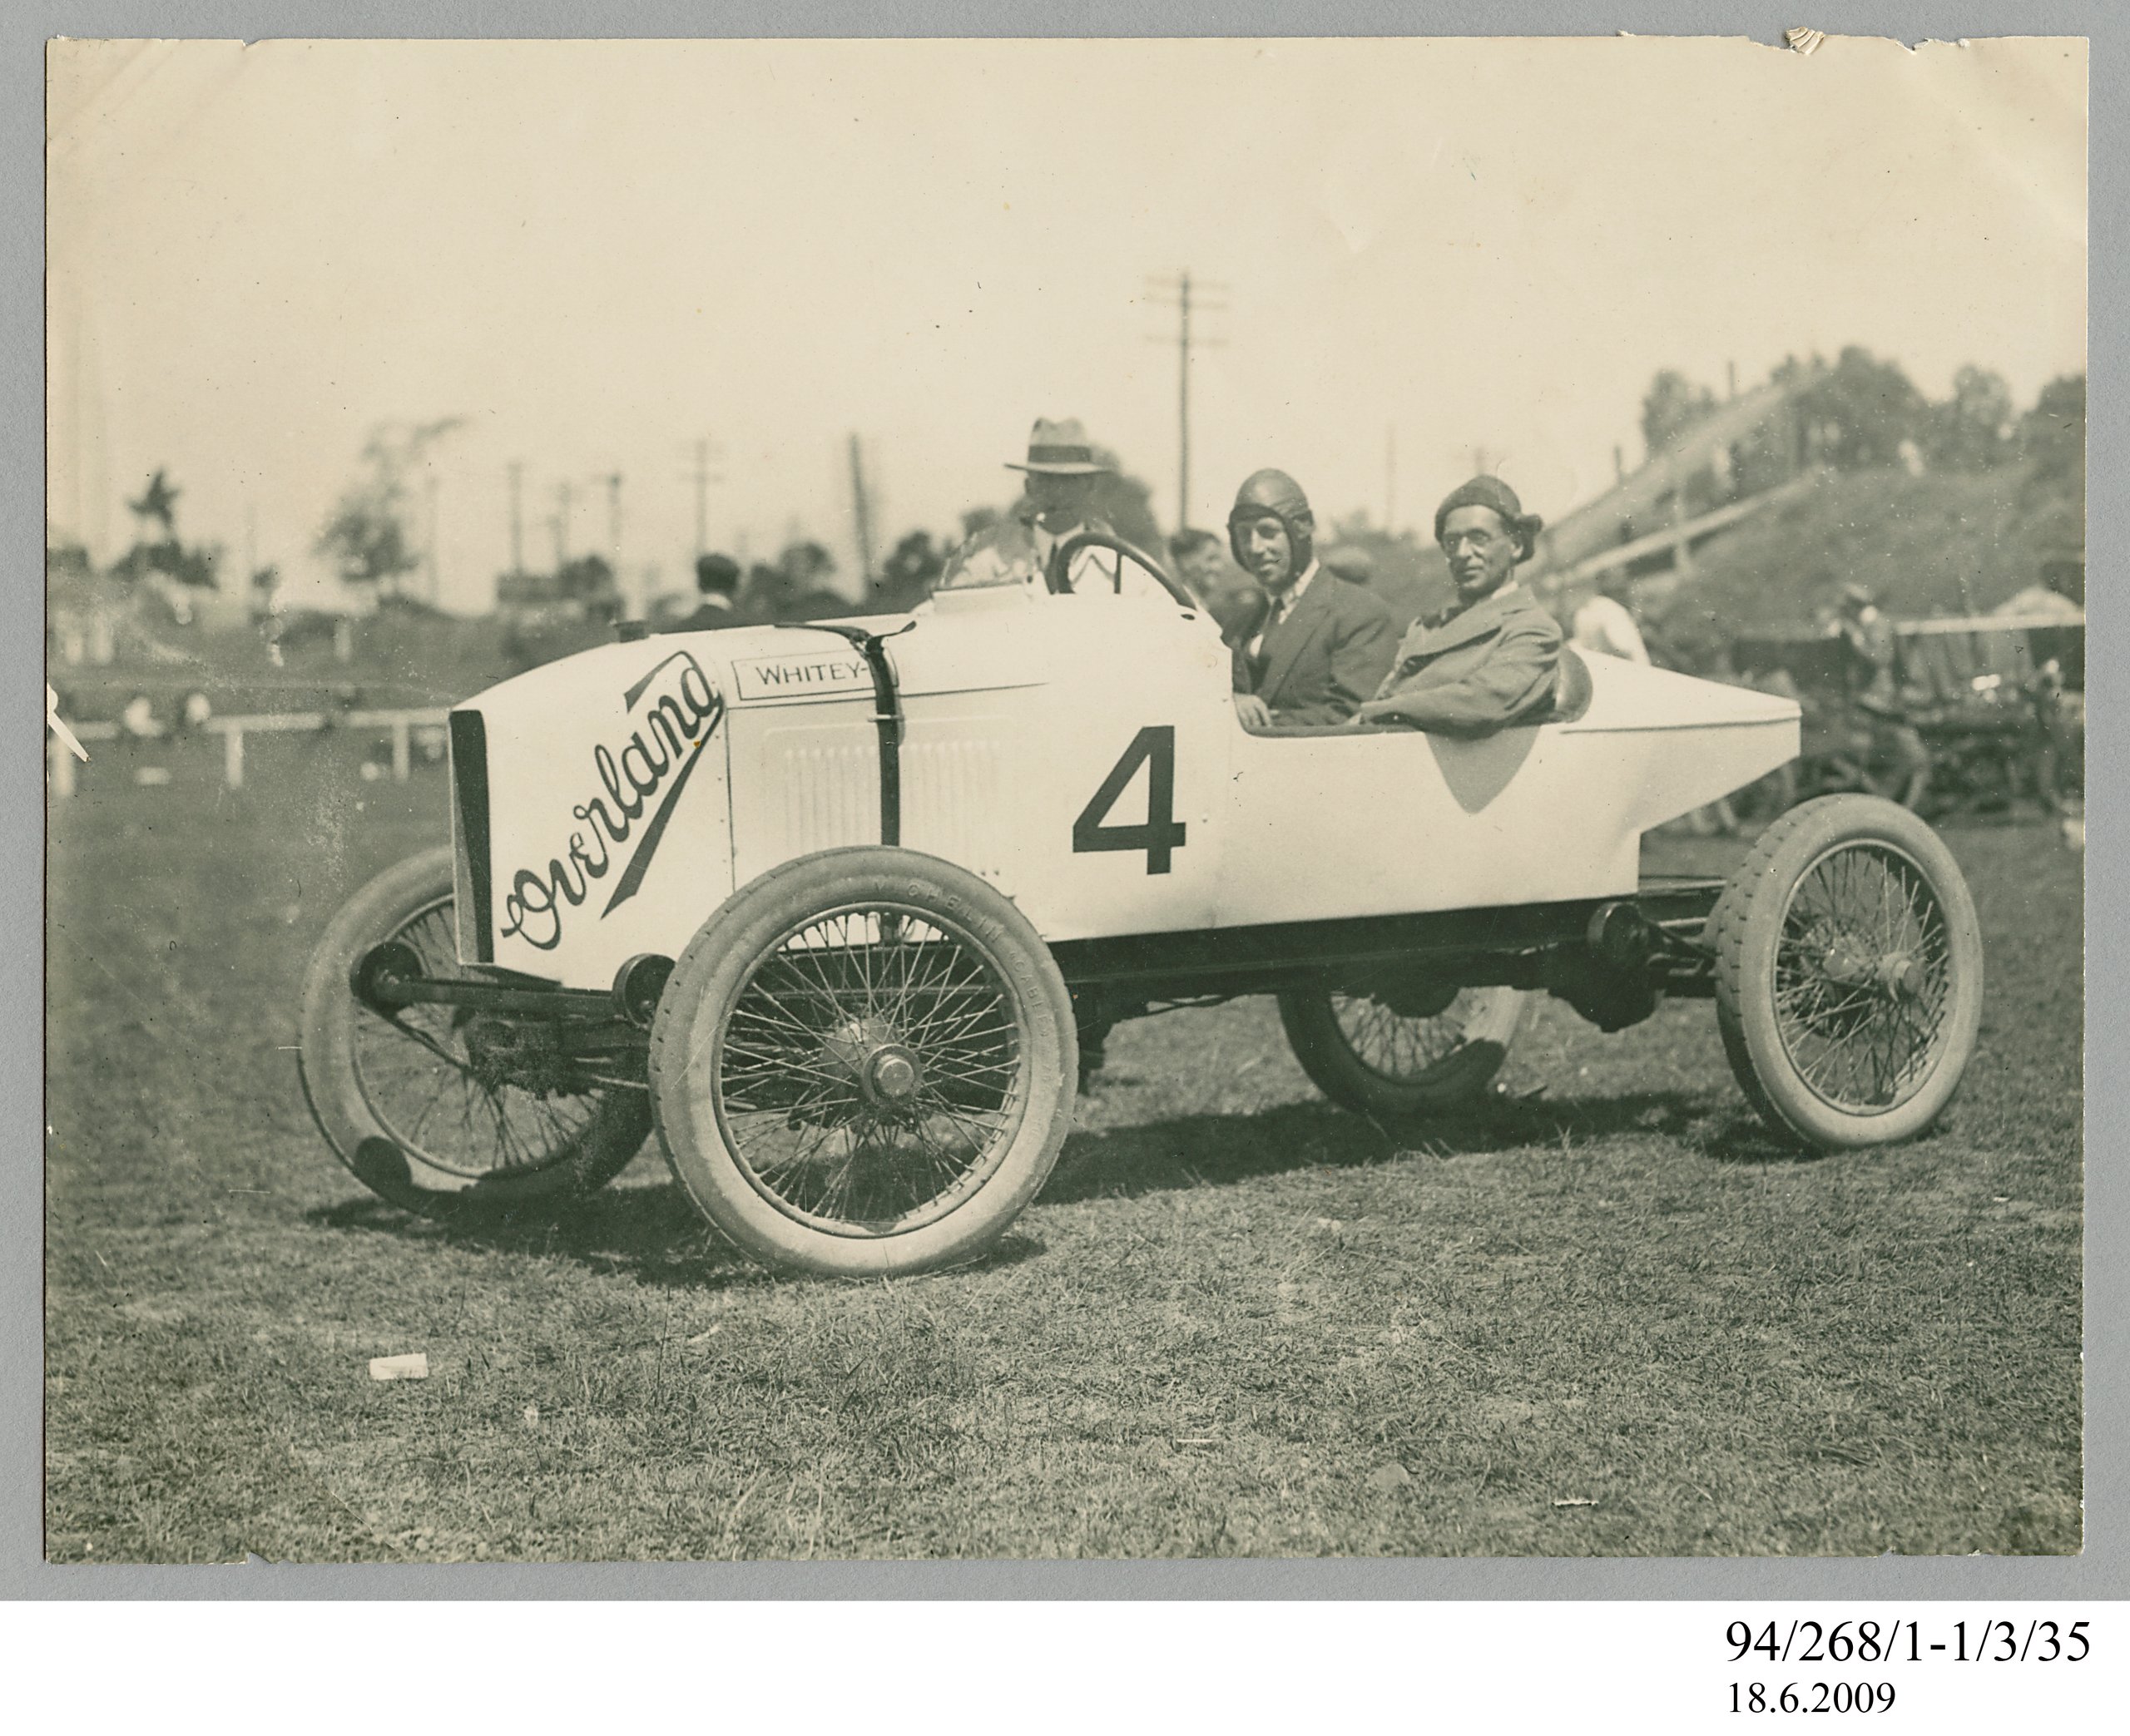 Donald James Harkness Archive re Motor Racing and Aeronautics